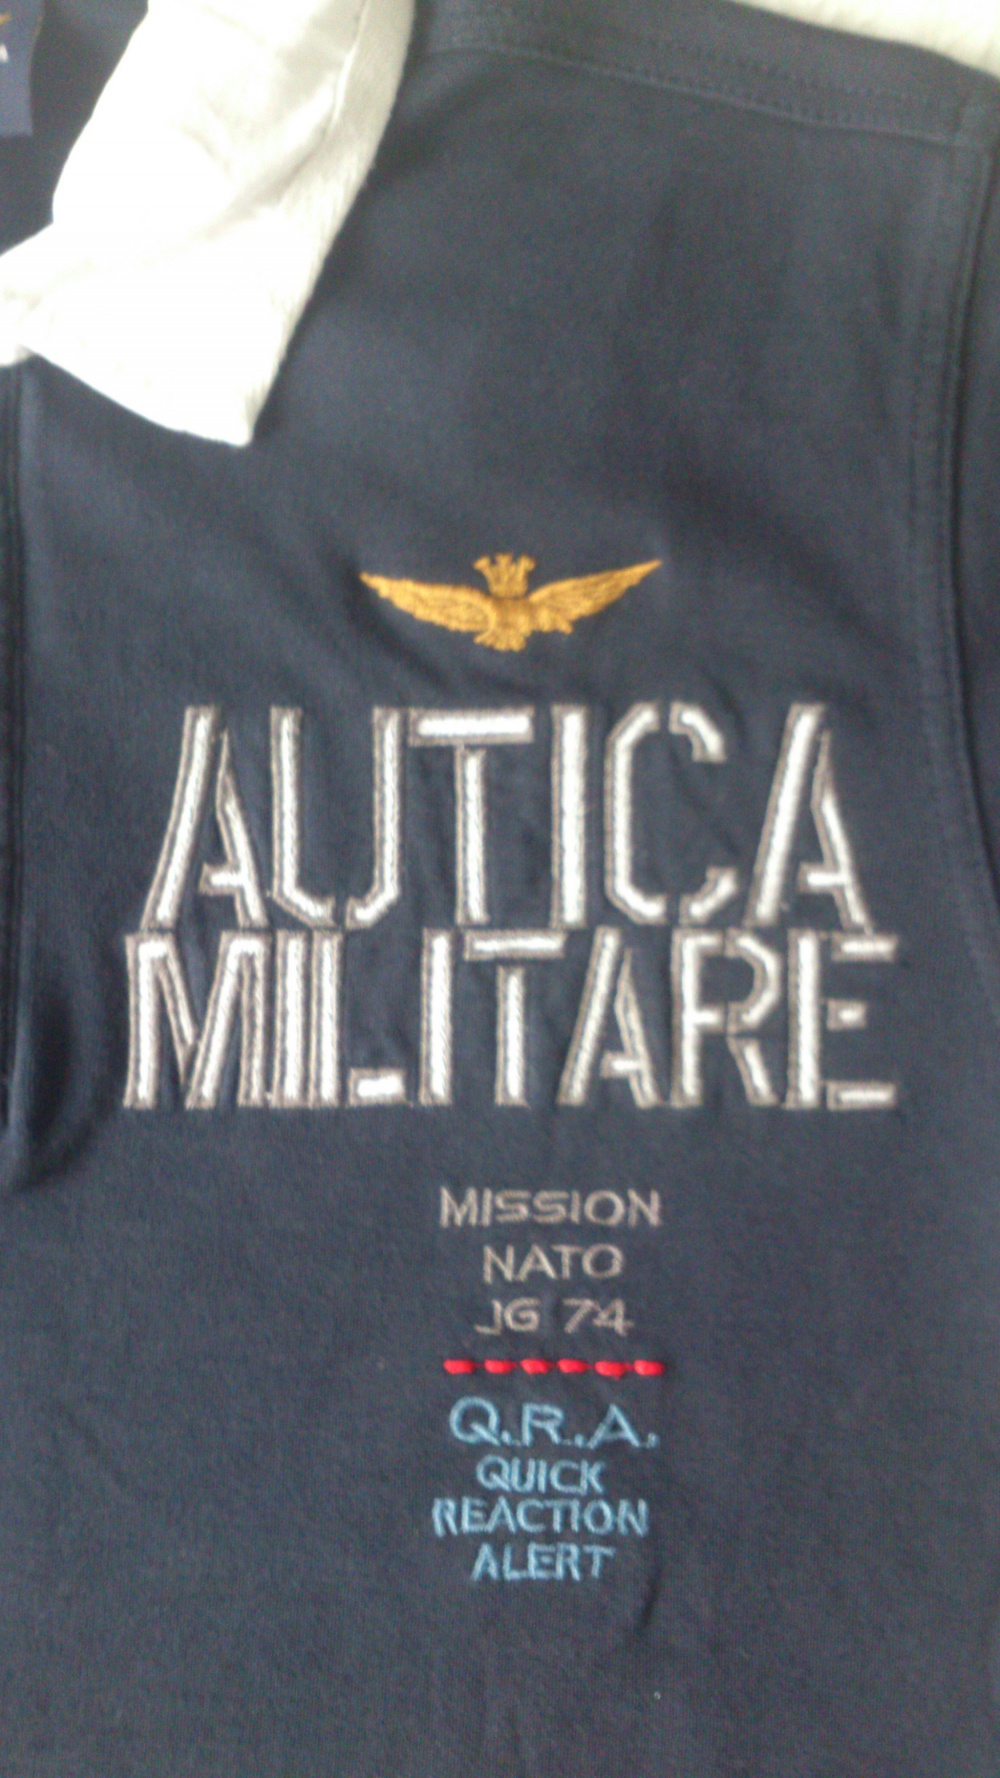 Рубашка поло Aeronatica Militare M